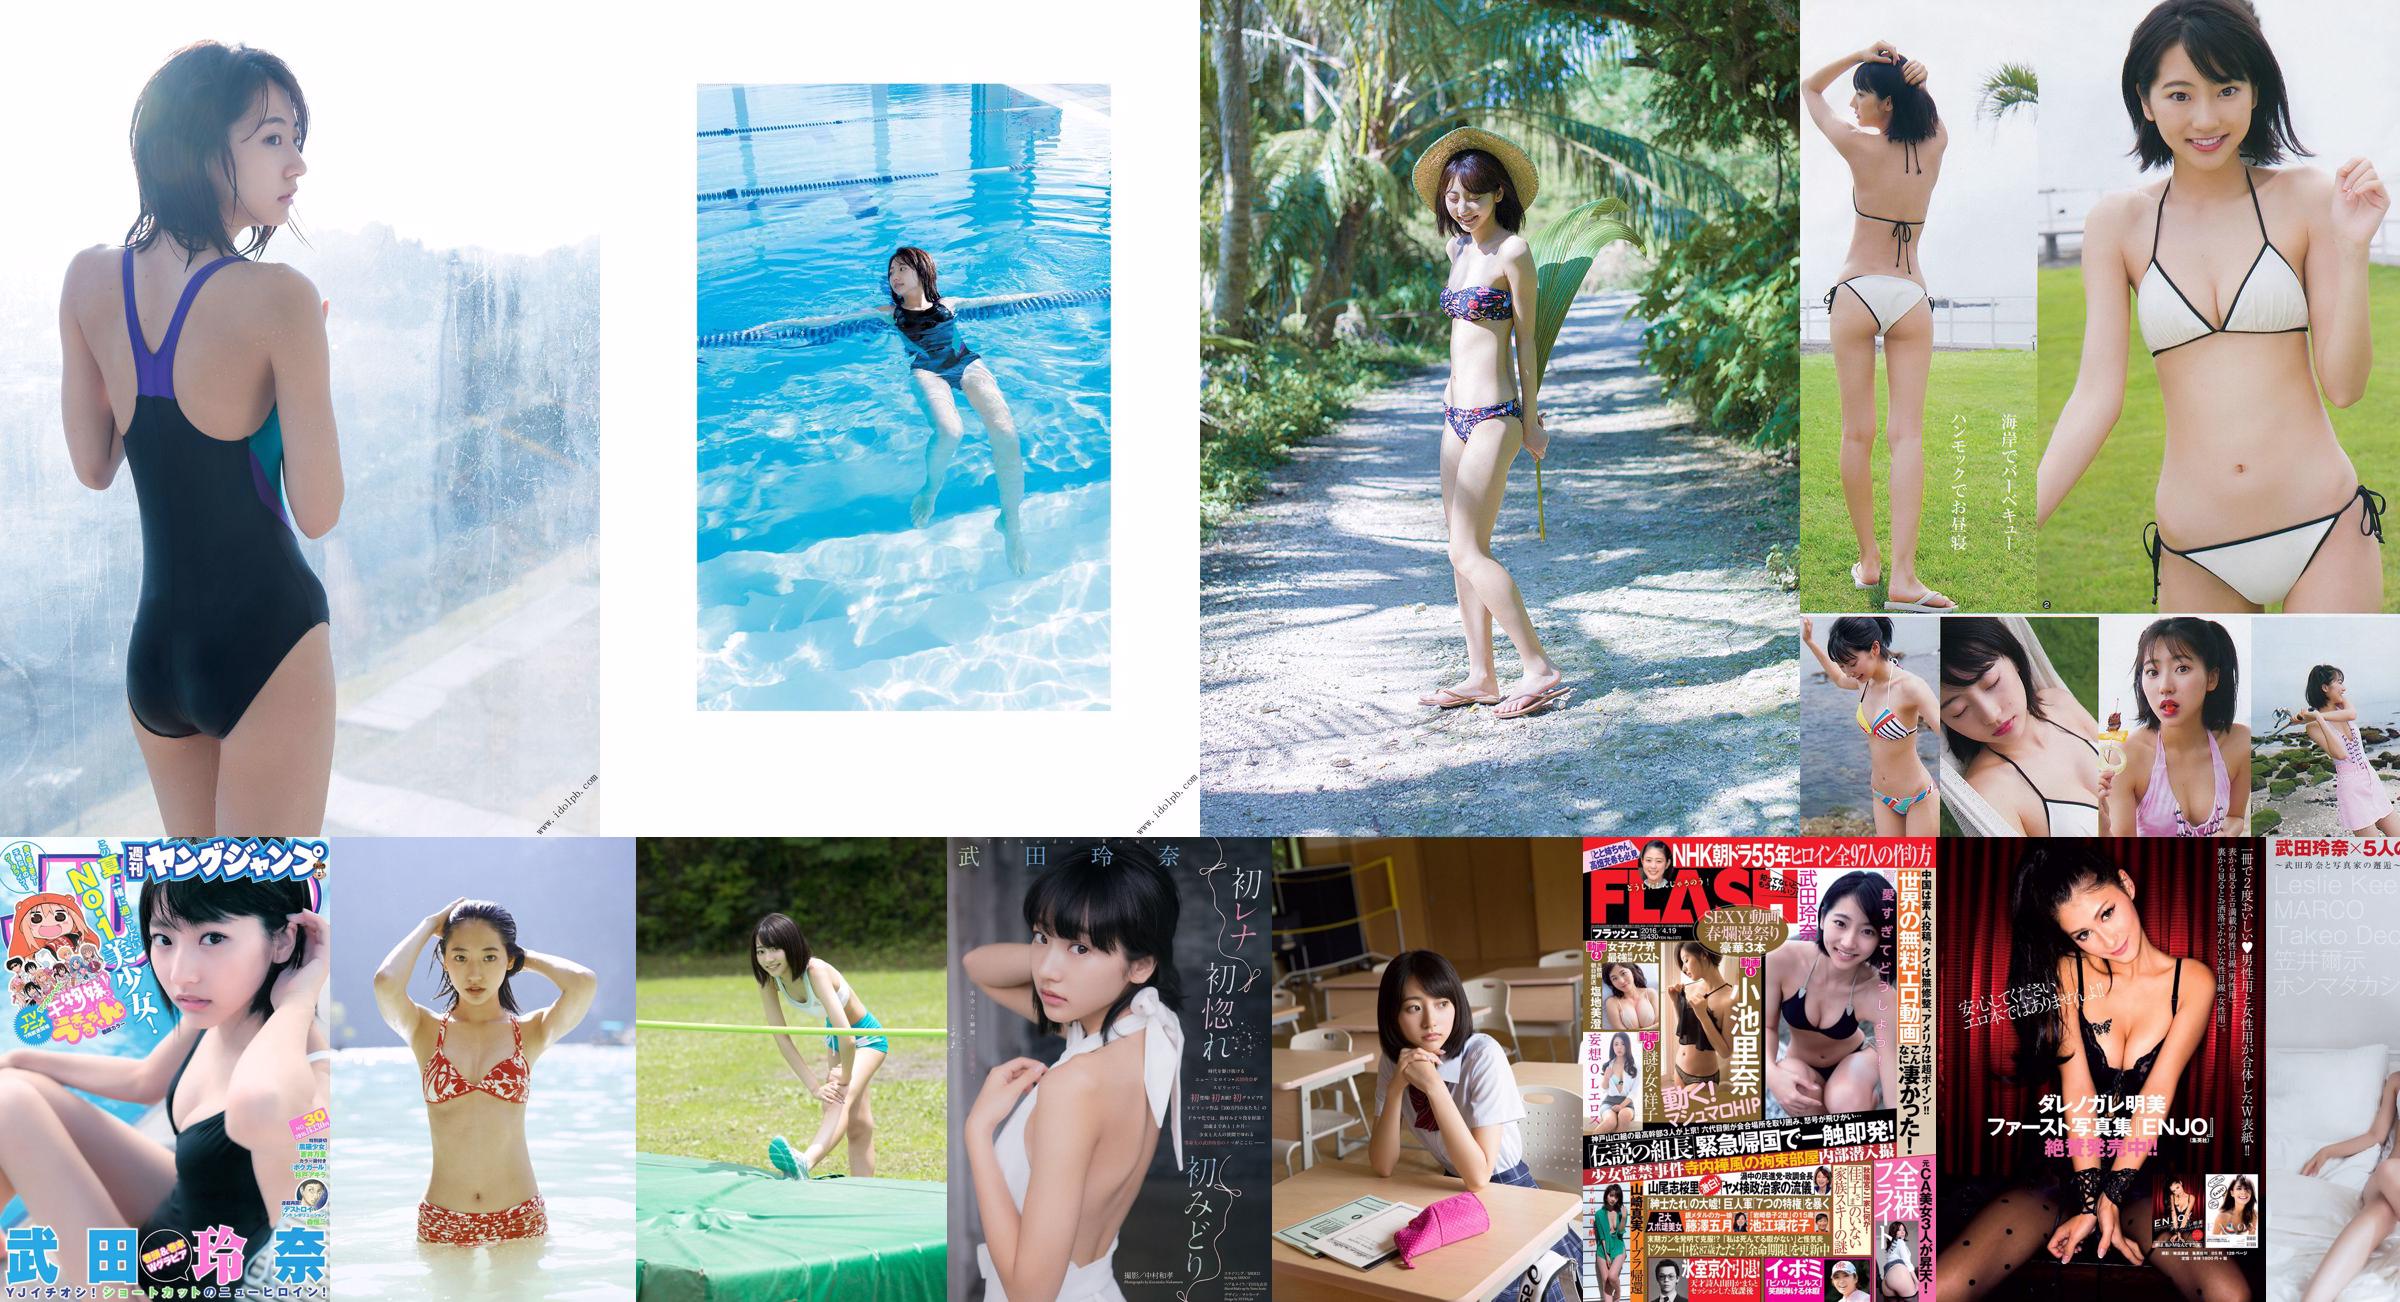 Rena Takeda, Shizuka Umemoto, Mikami [Weekly Young Jump] 2015 No.25 Photo Magazine No.b757f6 Page 1